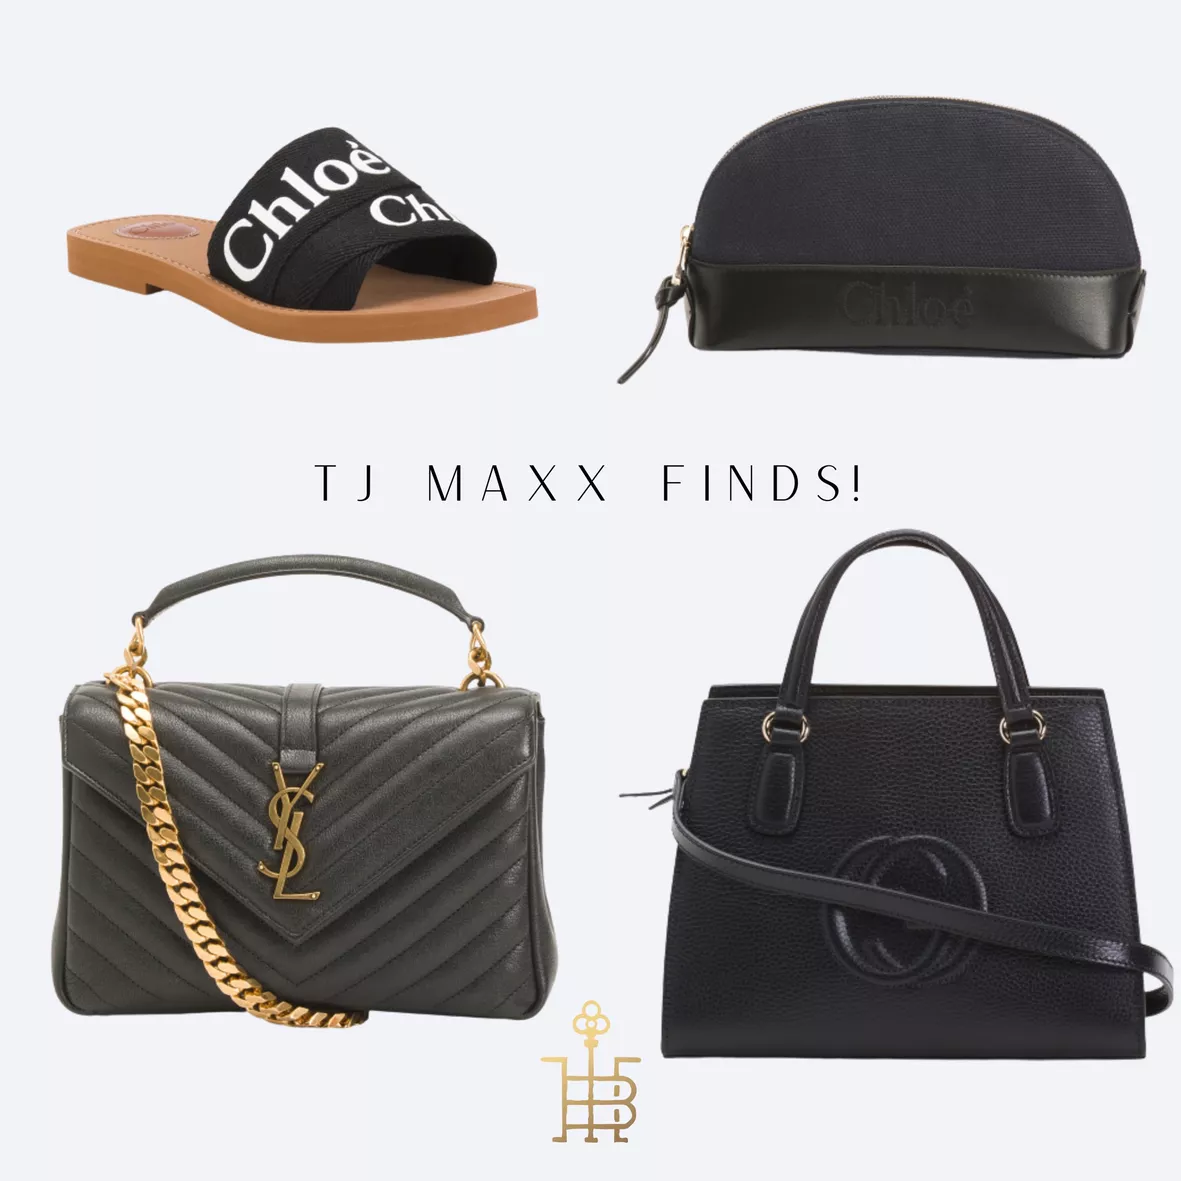 maxx designer handbags